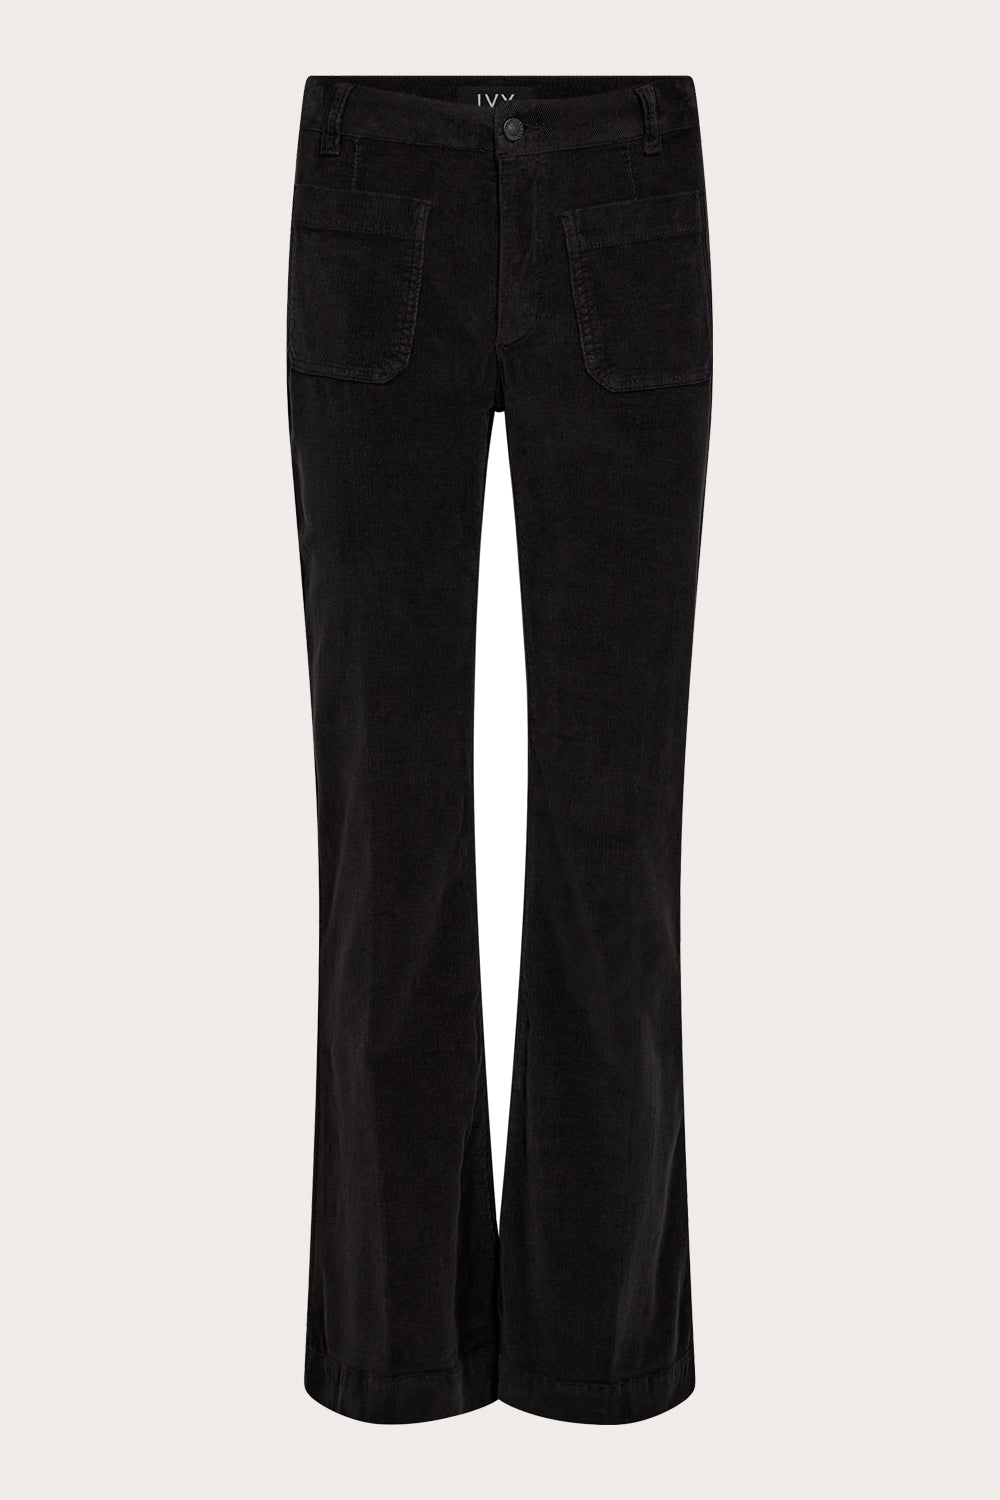 IVY Copenhagen IVY-Ann Charlotte Jeans Exclusive Corduroy Jeans & Pants 9 Black